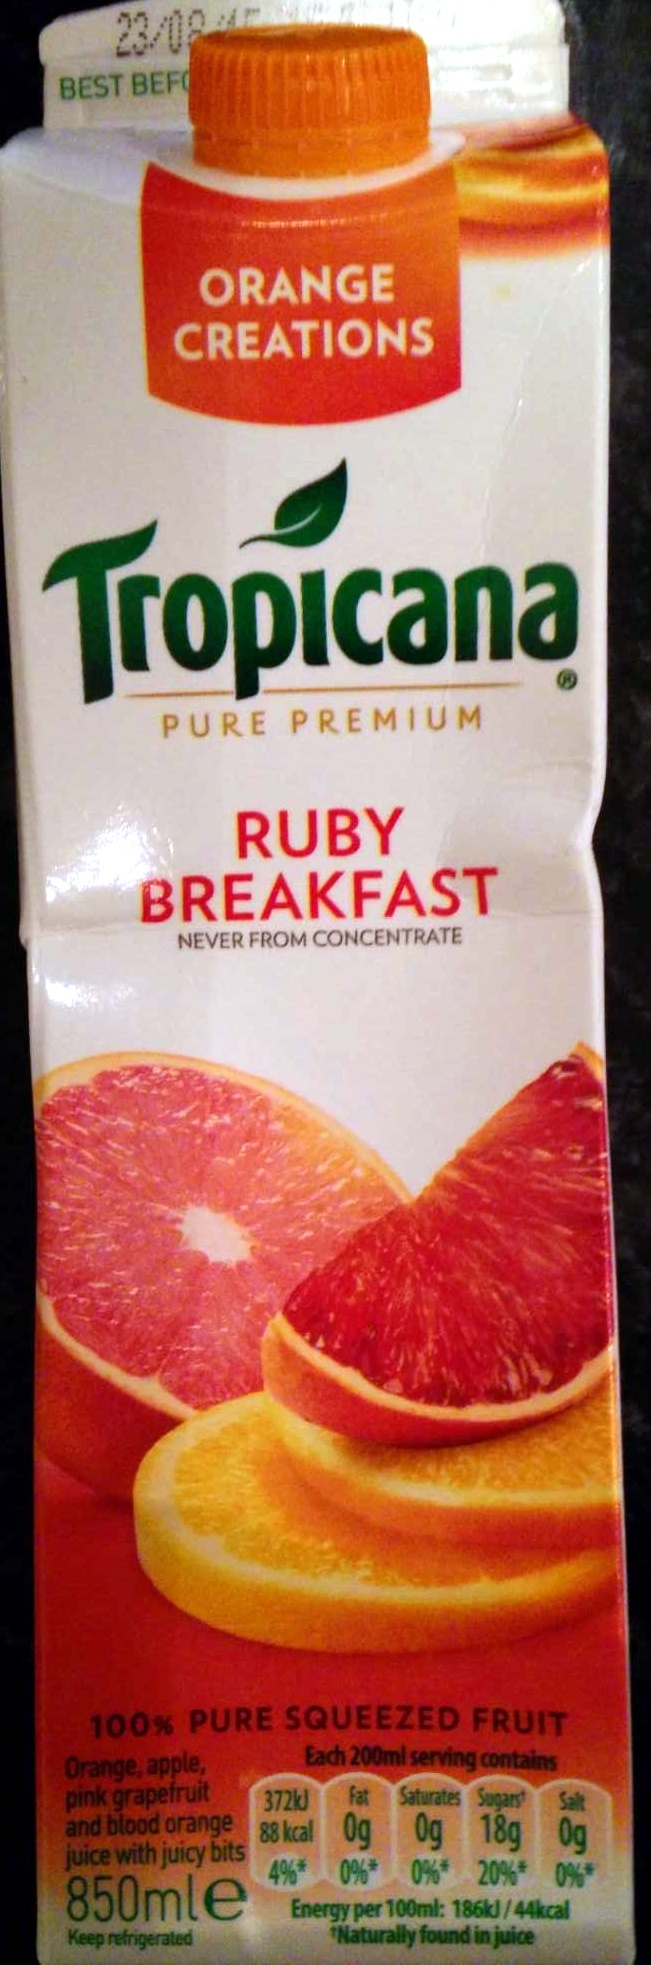 Ruby Breakfast Juice - Product